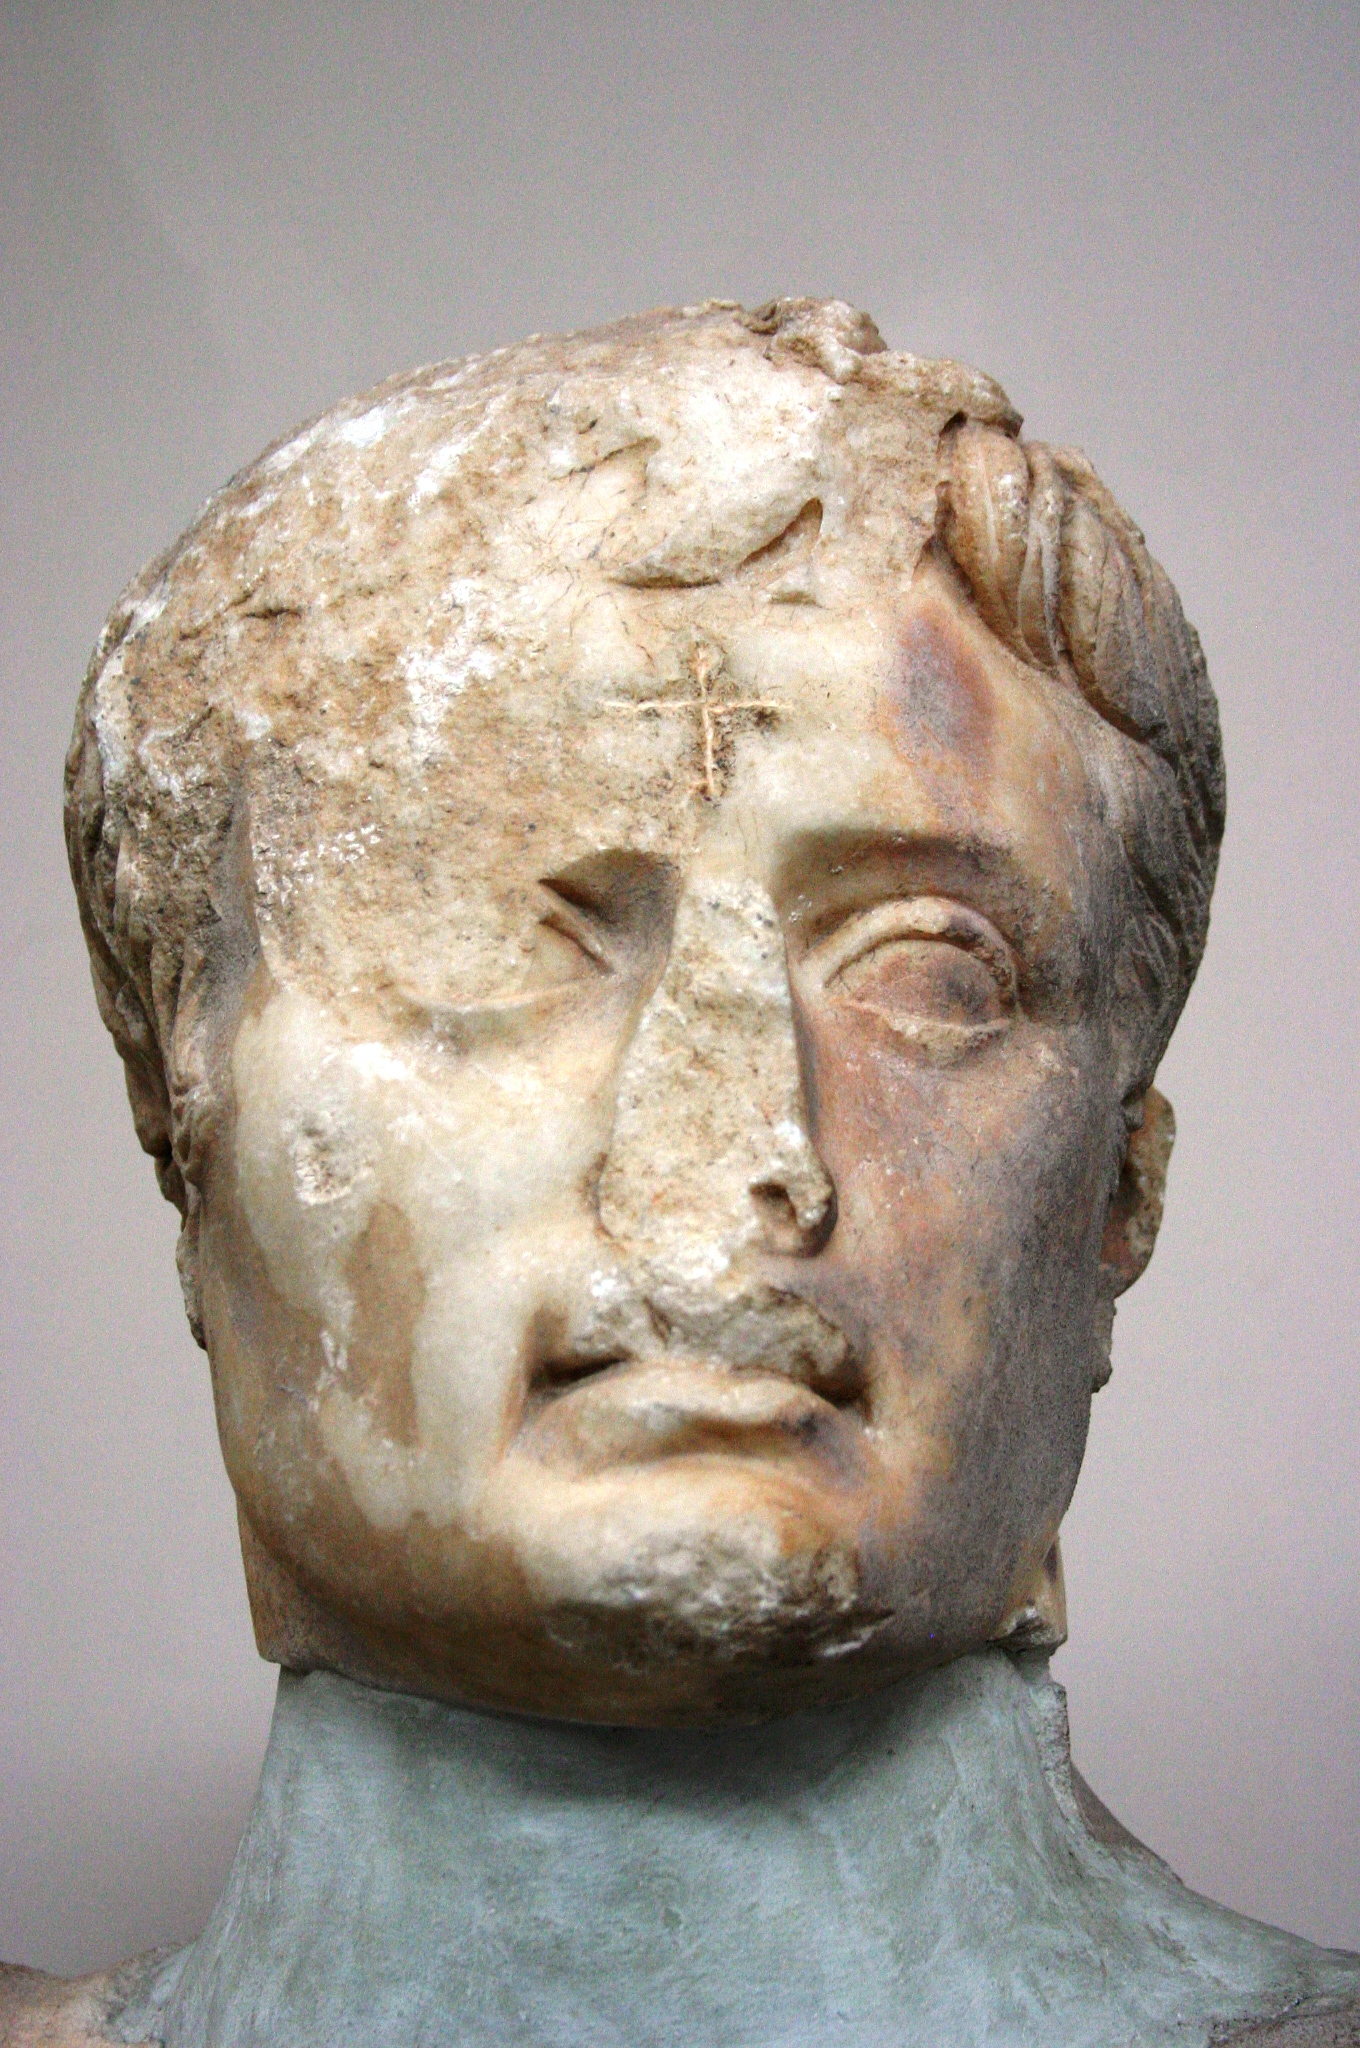 I Australija počinje rušiti spomenike vlastite nacionalne povijesti Defaced_bust_of_Augustus_-_Ephesus_Museum